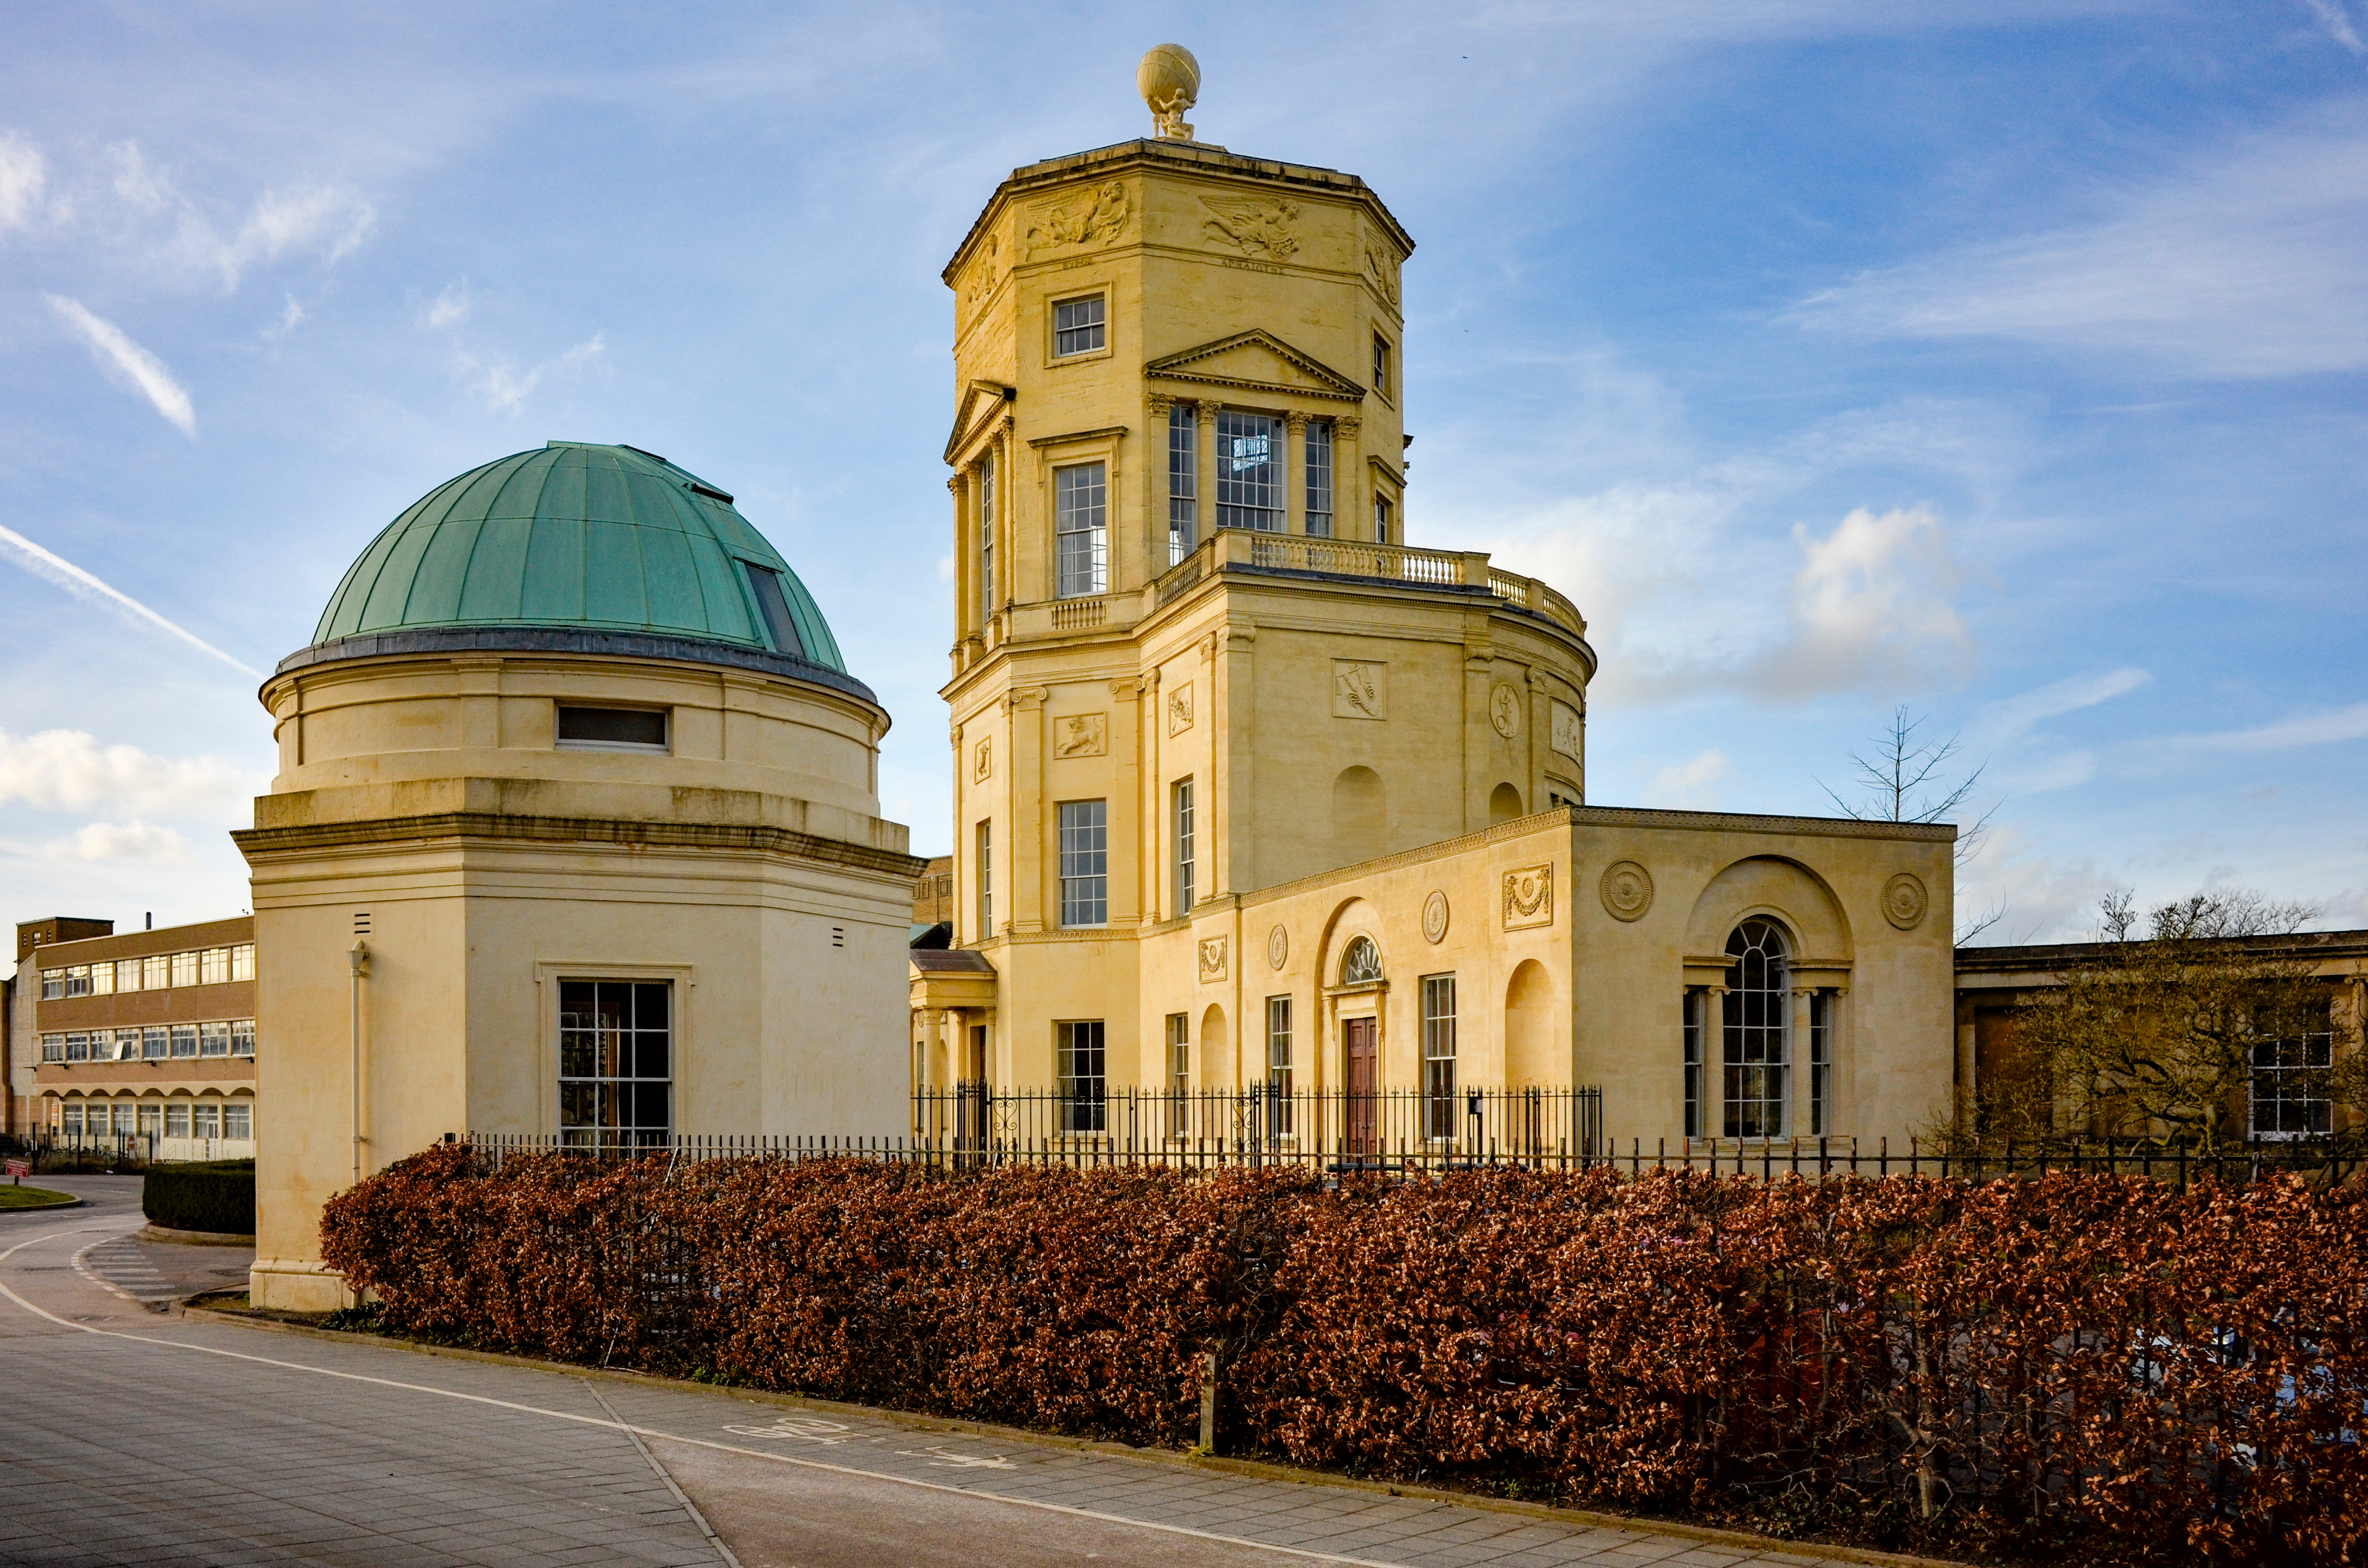 Radcliffe Observatory Quarter